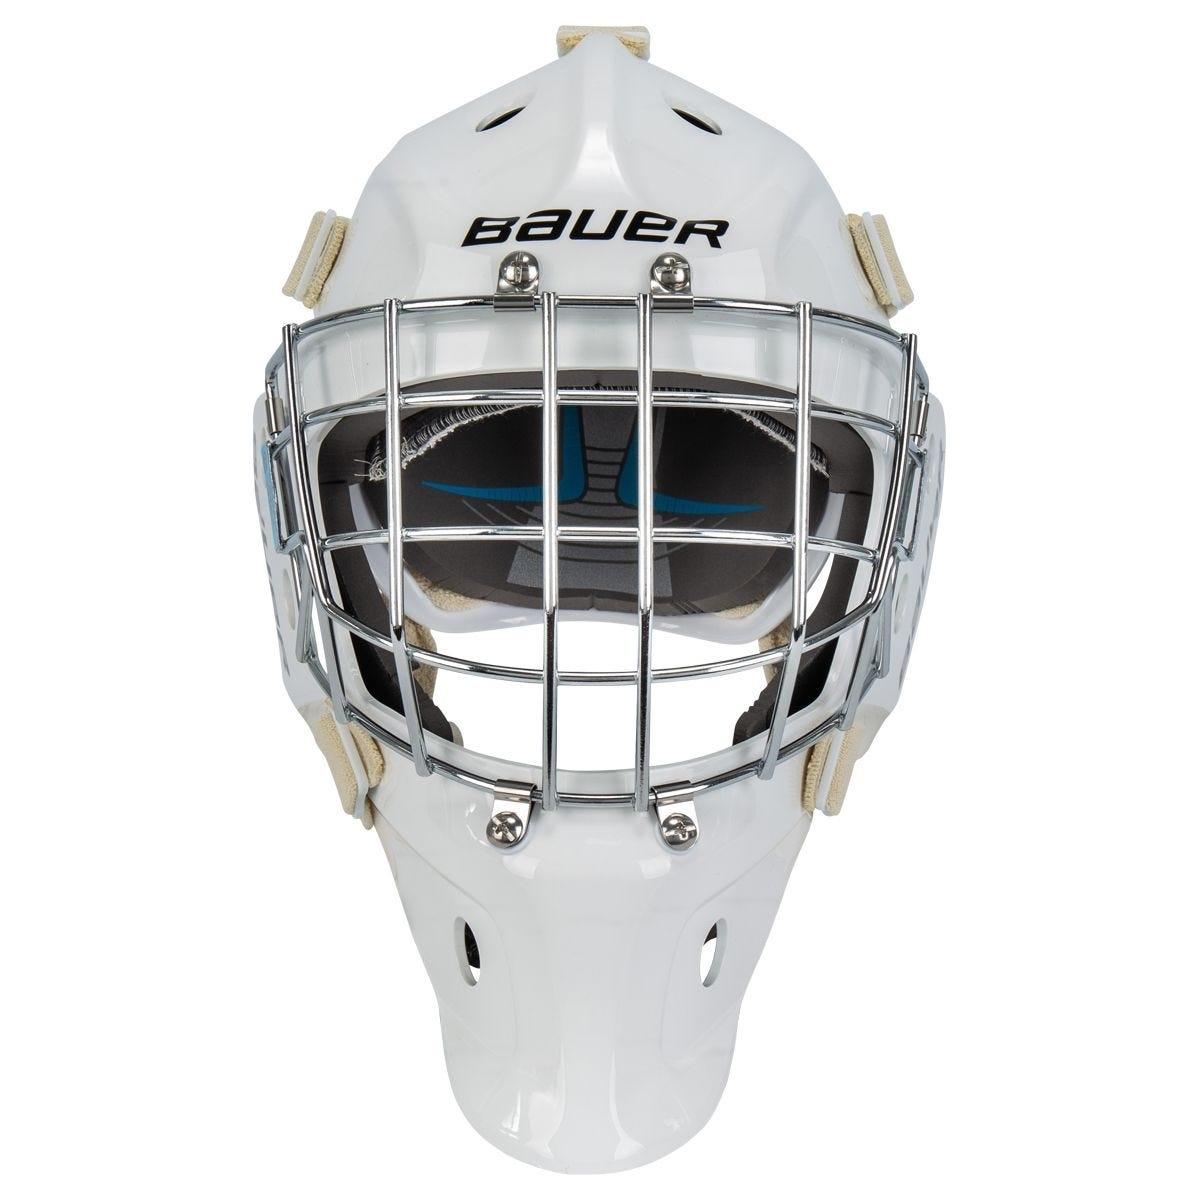 Bauer 930 Sr. Certified Goalie Maskproduct zoom image #3